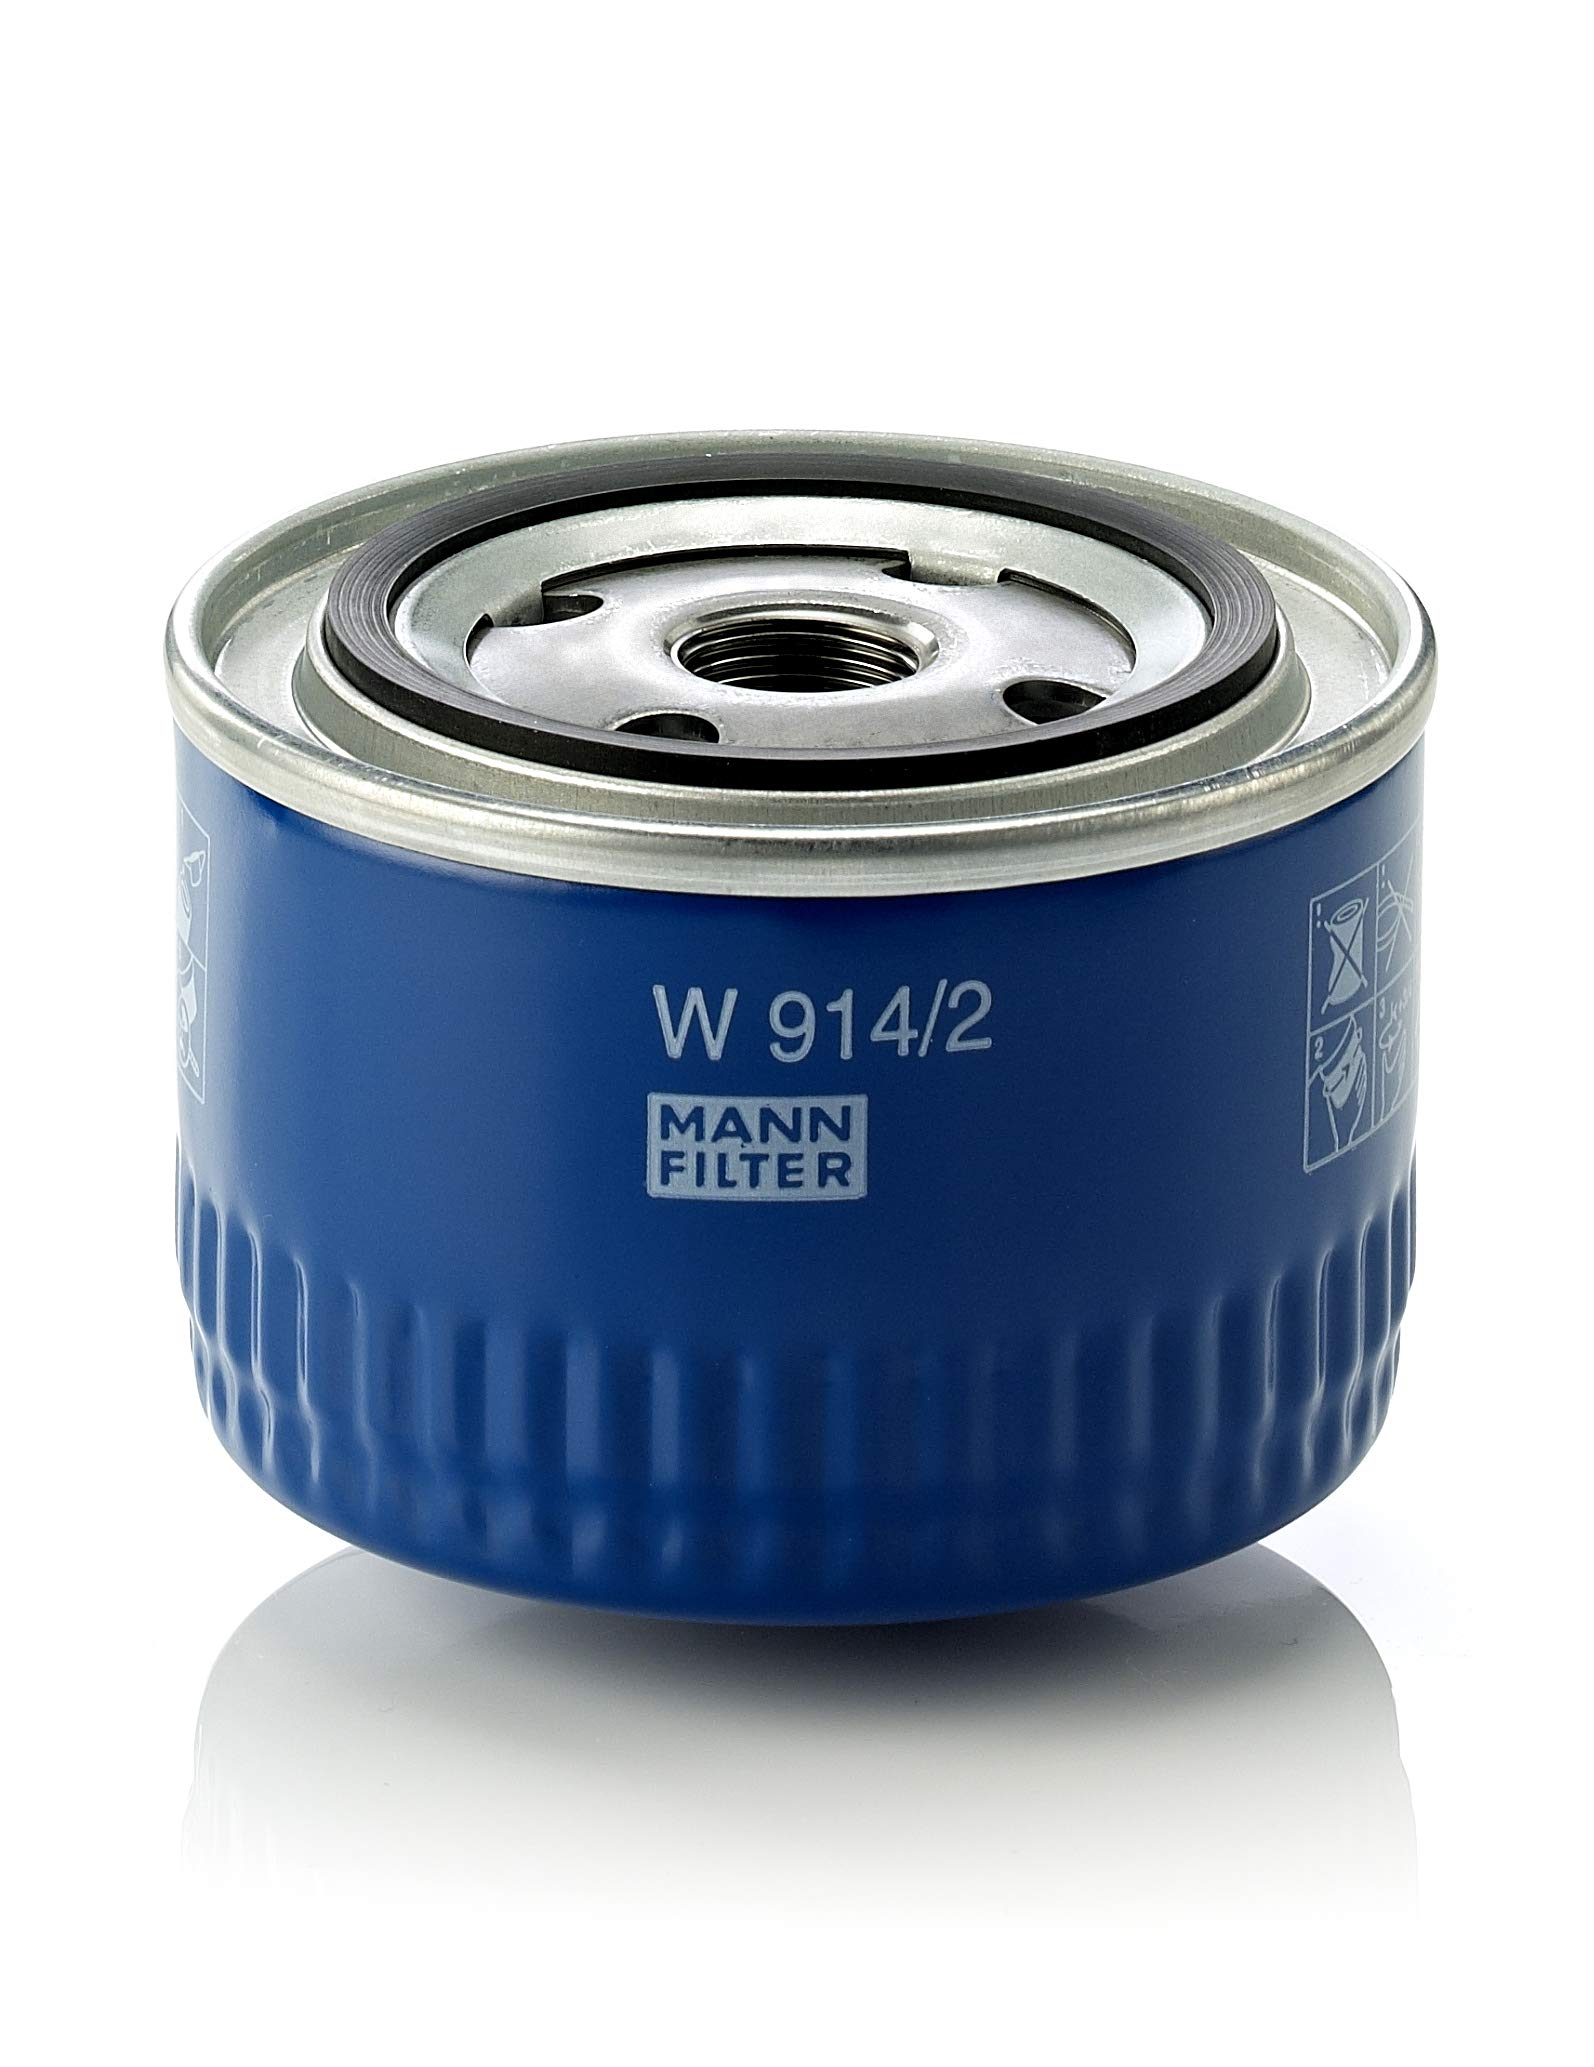 MANN-FILTER W 914/2 Ölfilter – Getriebefilter – Für PKW von MANN-FILTER